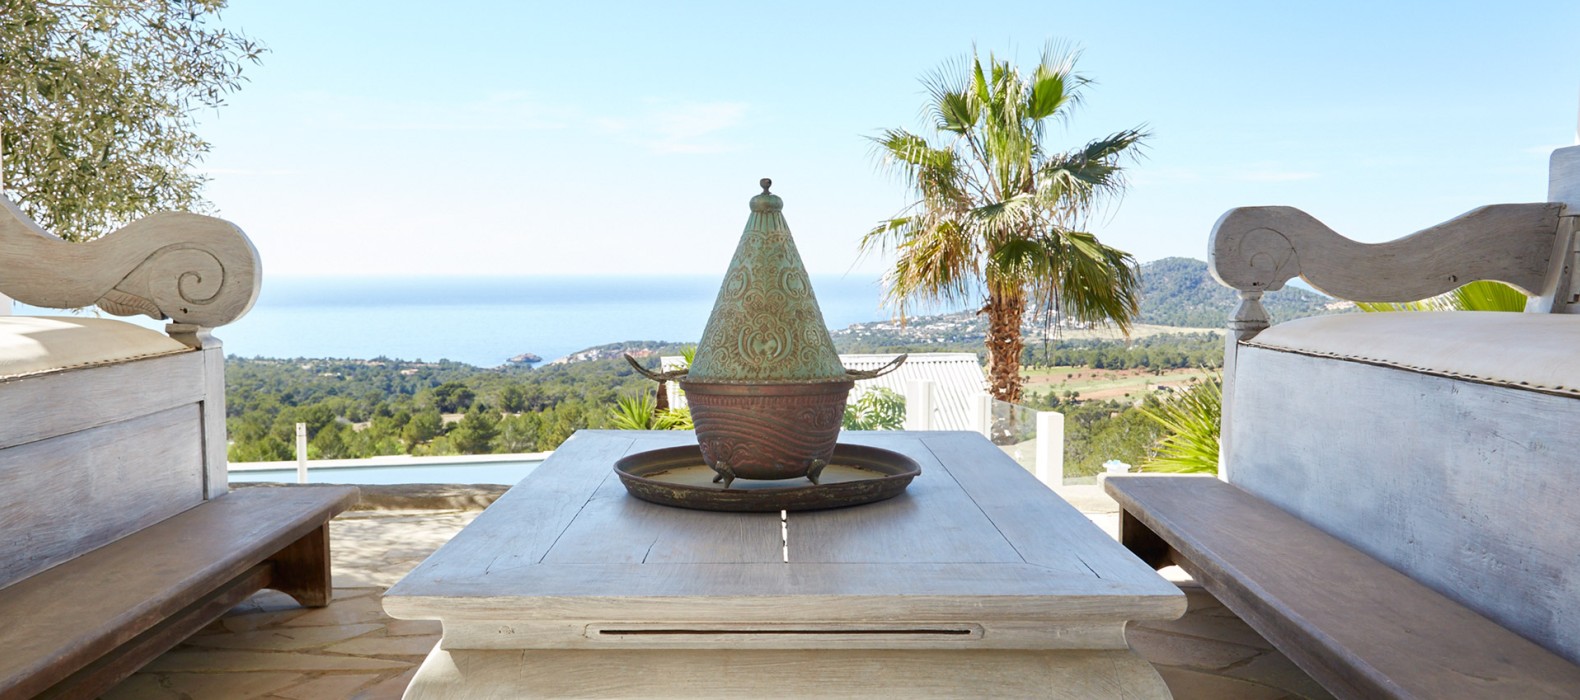 Exterior chill area of Villa Monterra in Ibiza